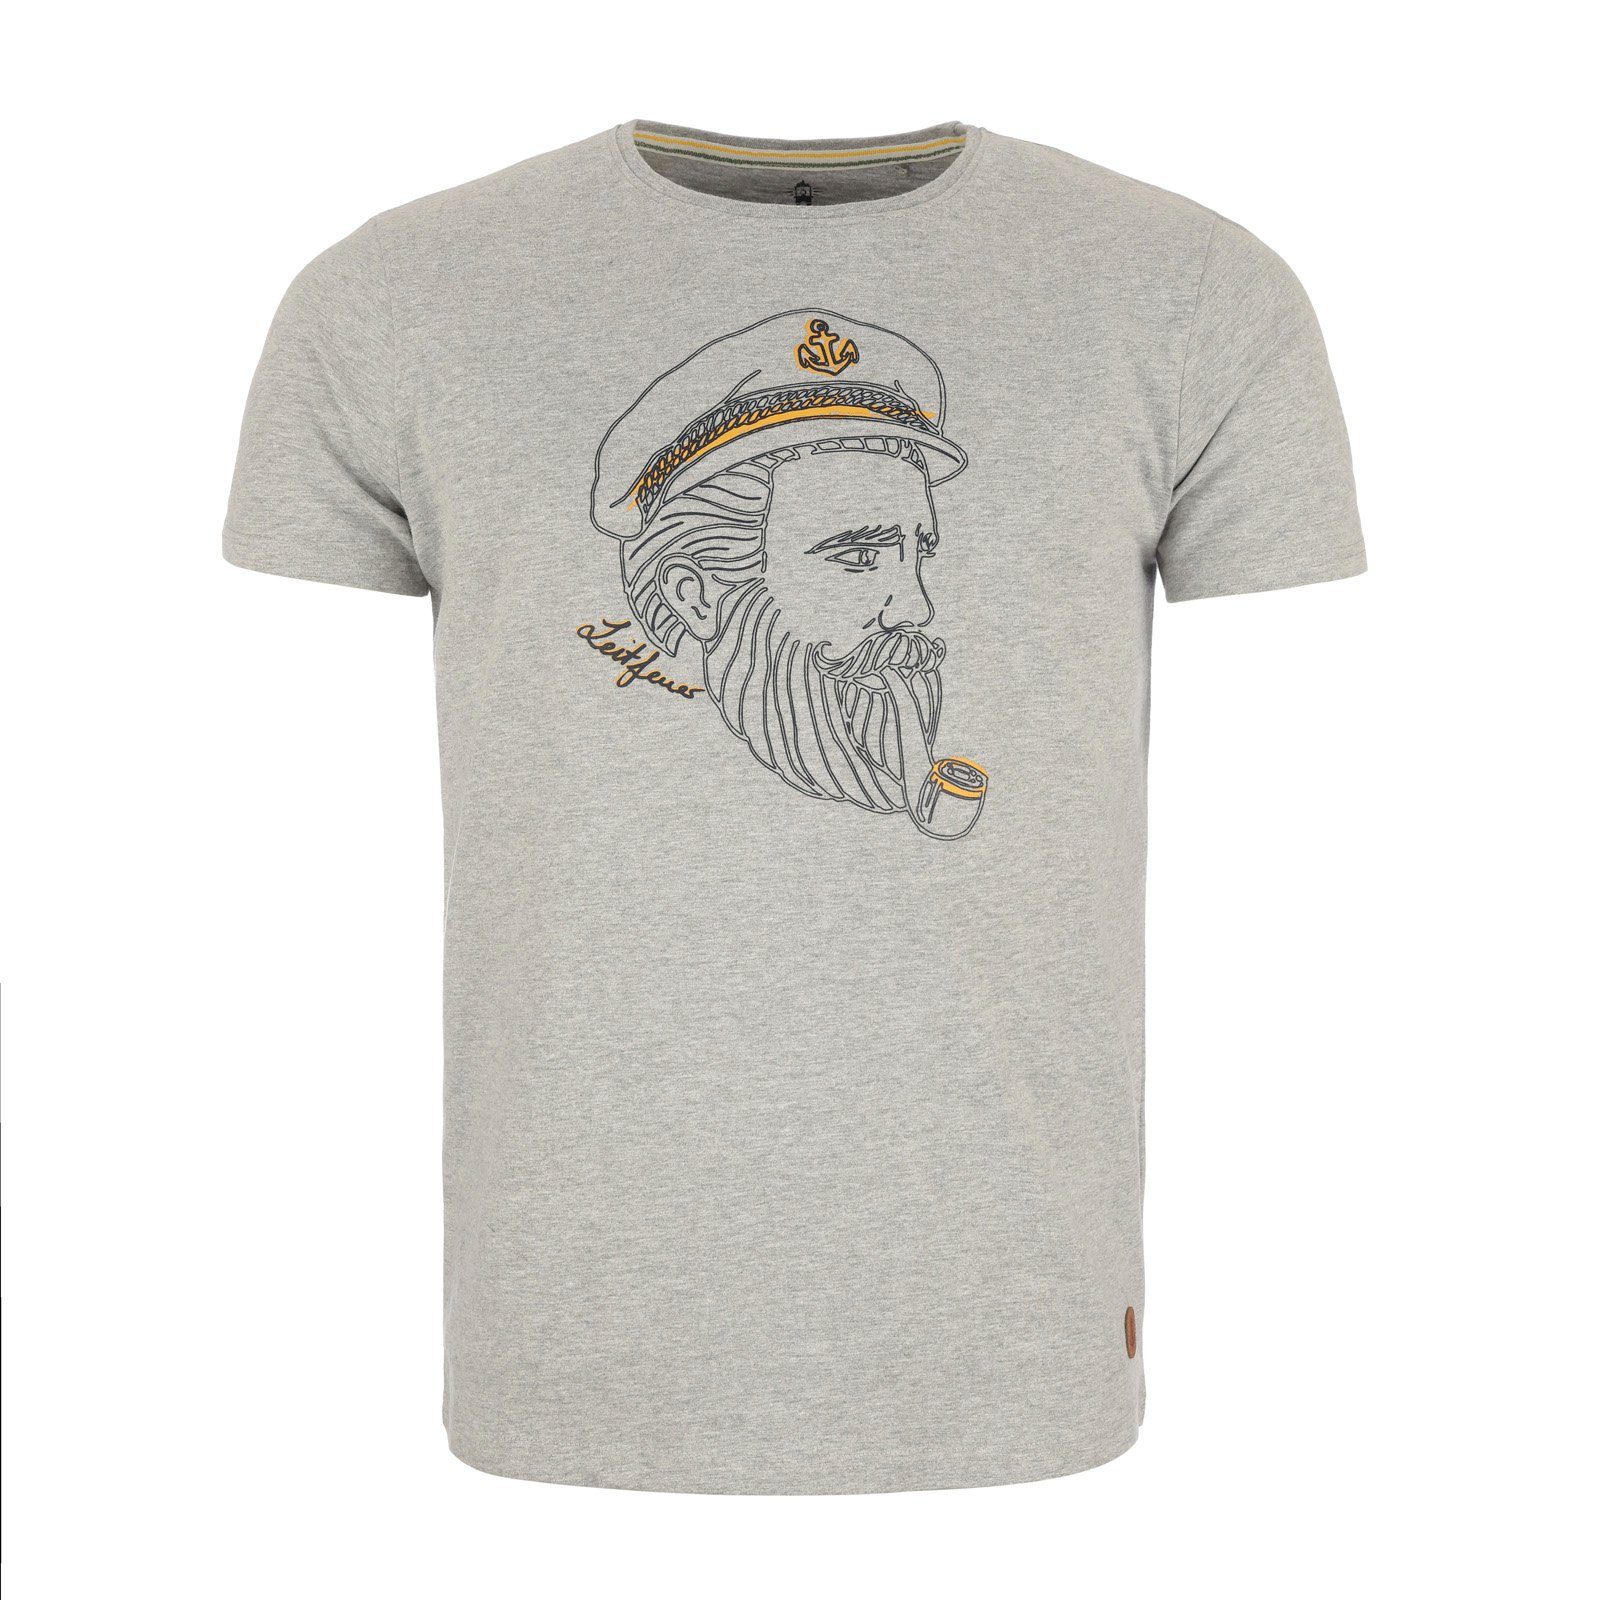 Leitfeuer T-Shirt Herren Rundhals Kapitän-Seemann-Print weich 1/2 Shirt mit hellgrau Arm samtig